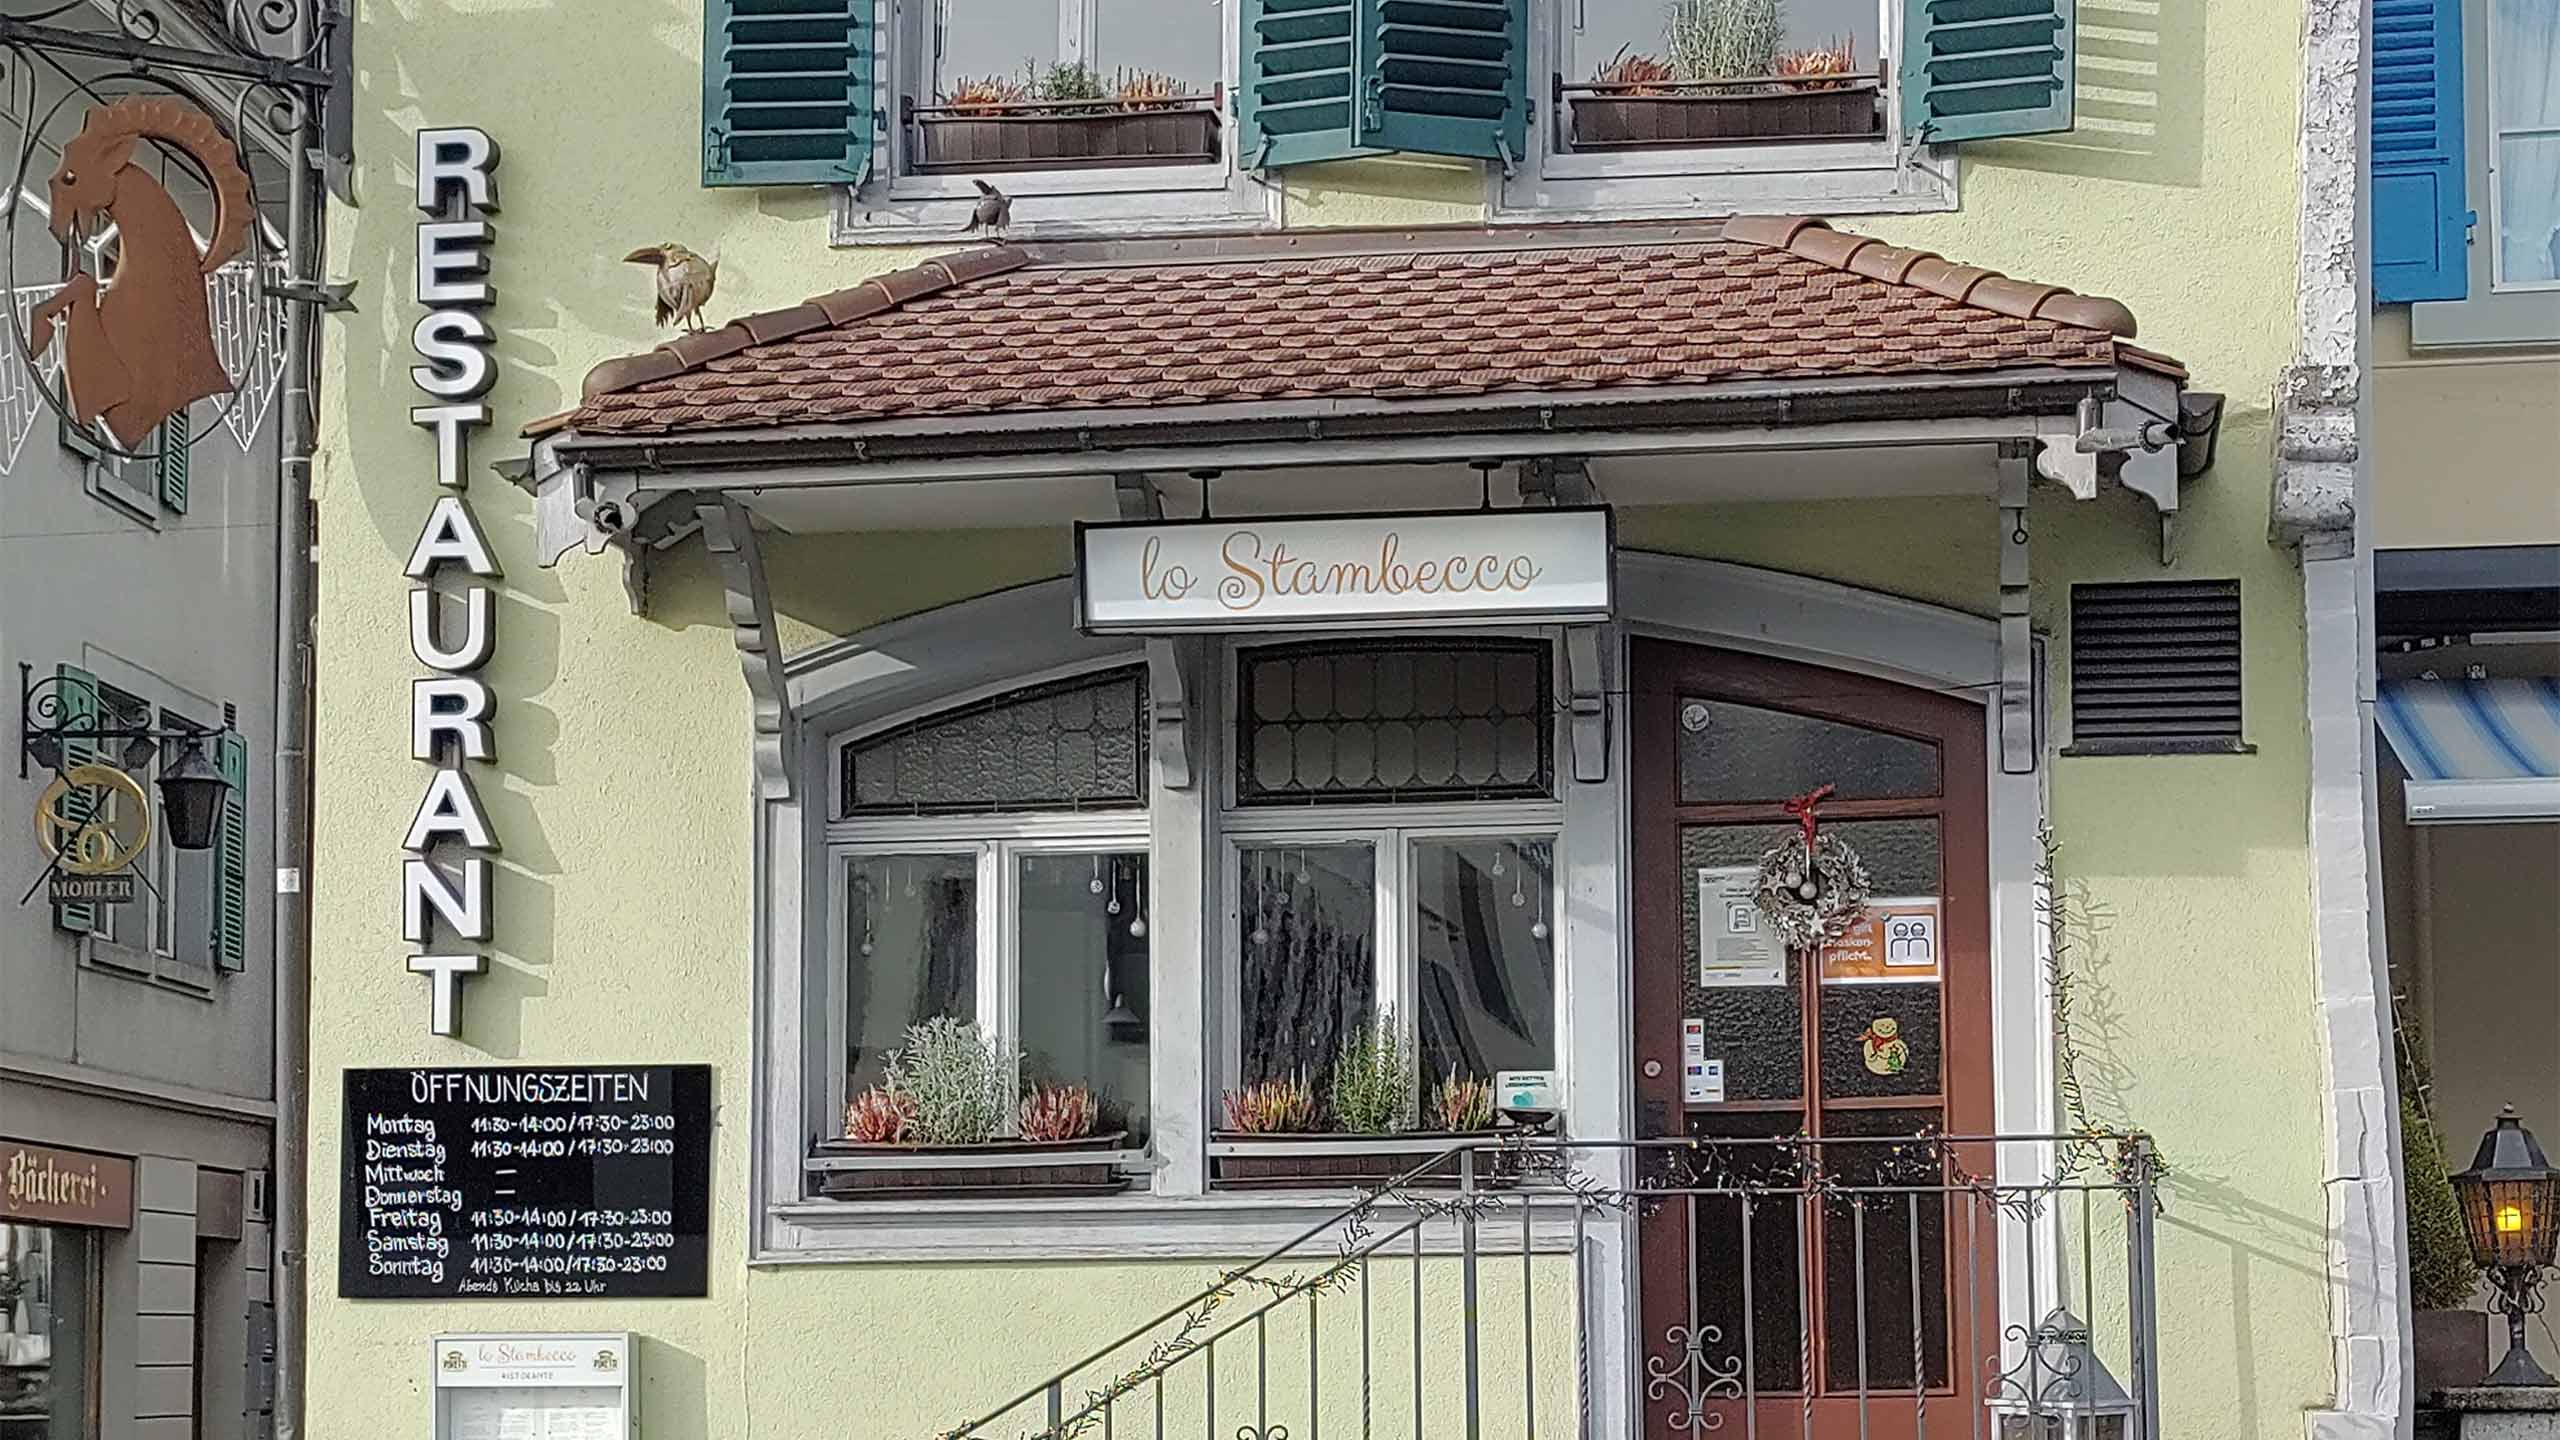 ristorante-lo-stambecco-aussen-eingang-fassade.jpg